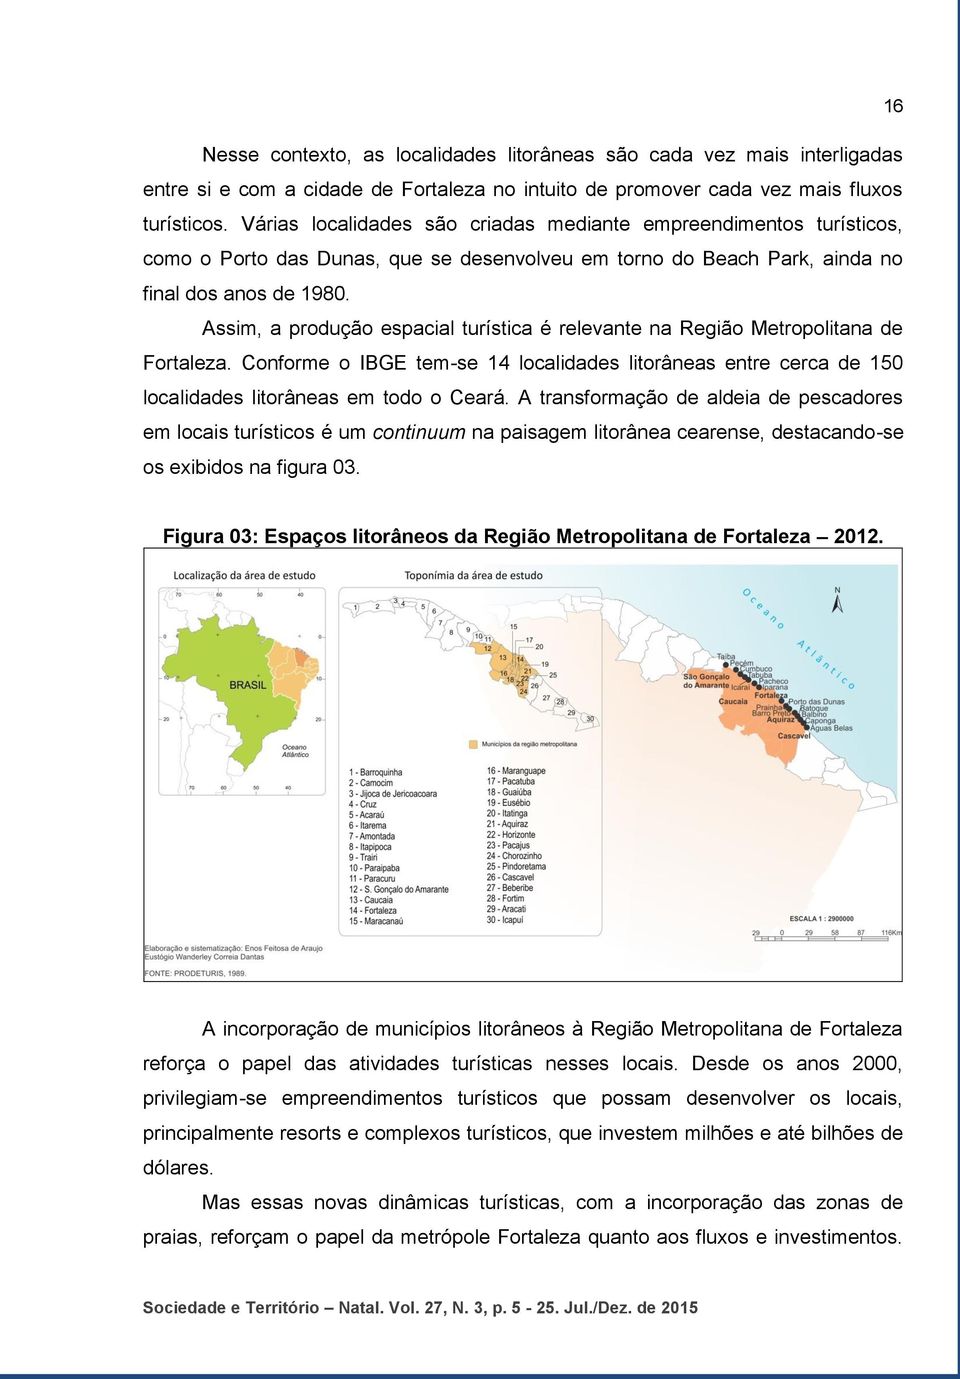 Assim, a produção espacial turística é relevante na Região Metropolitana de Fortaleza. Conforme o IBGE tem-se 14 localidades litorâneas entre cerca de 150 localidades litorâneas em todo o Ceará.